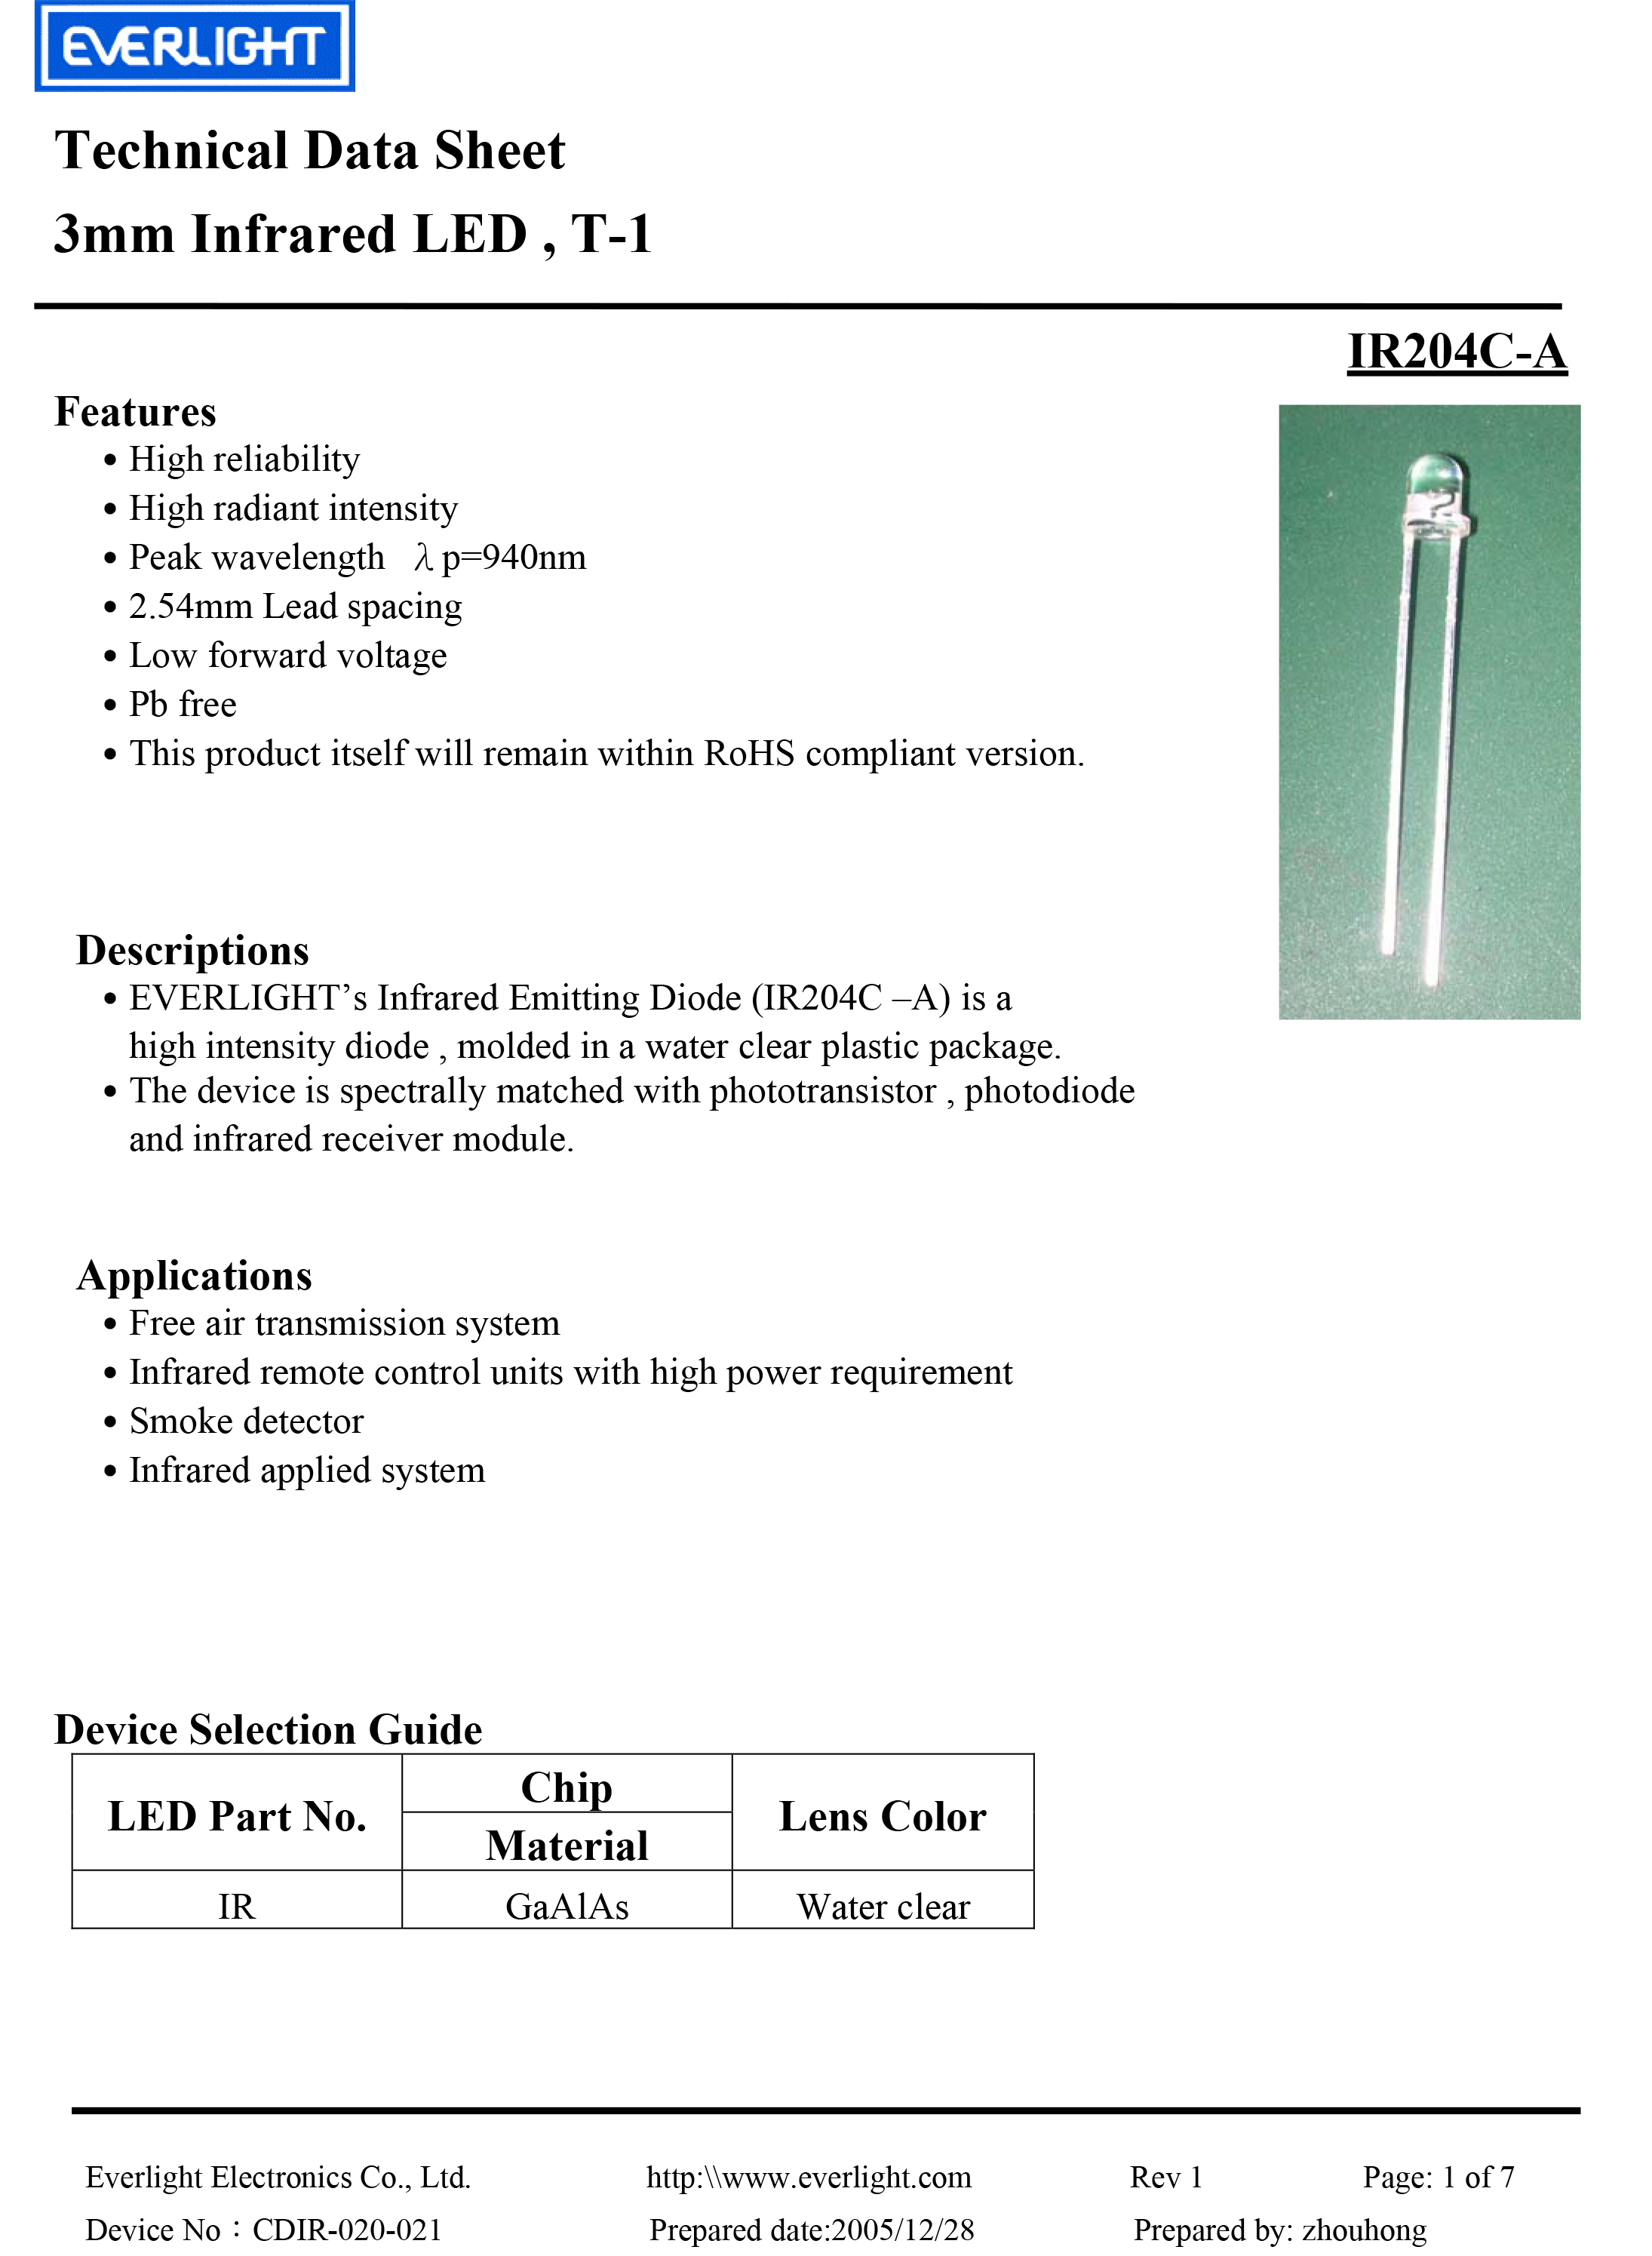 亿光3mm直插红外发射管IR204C-A规格书PDF